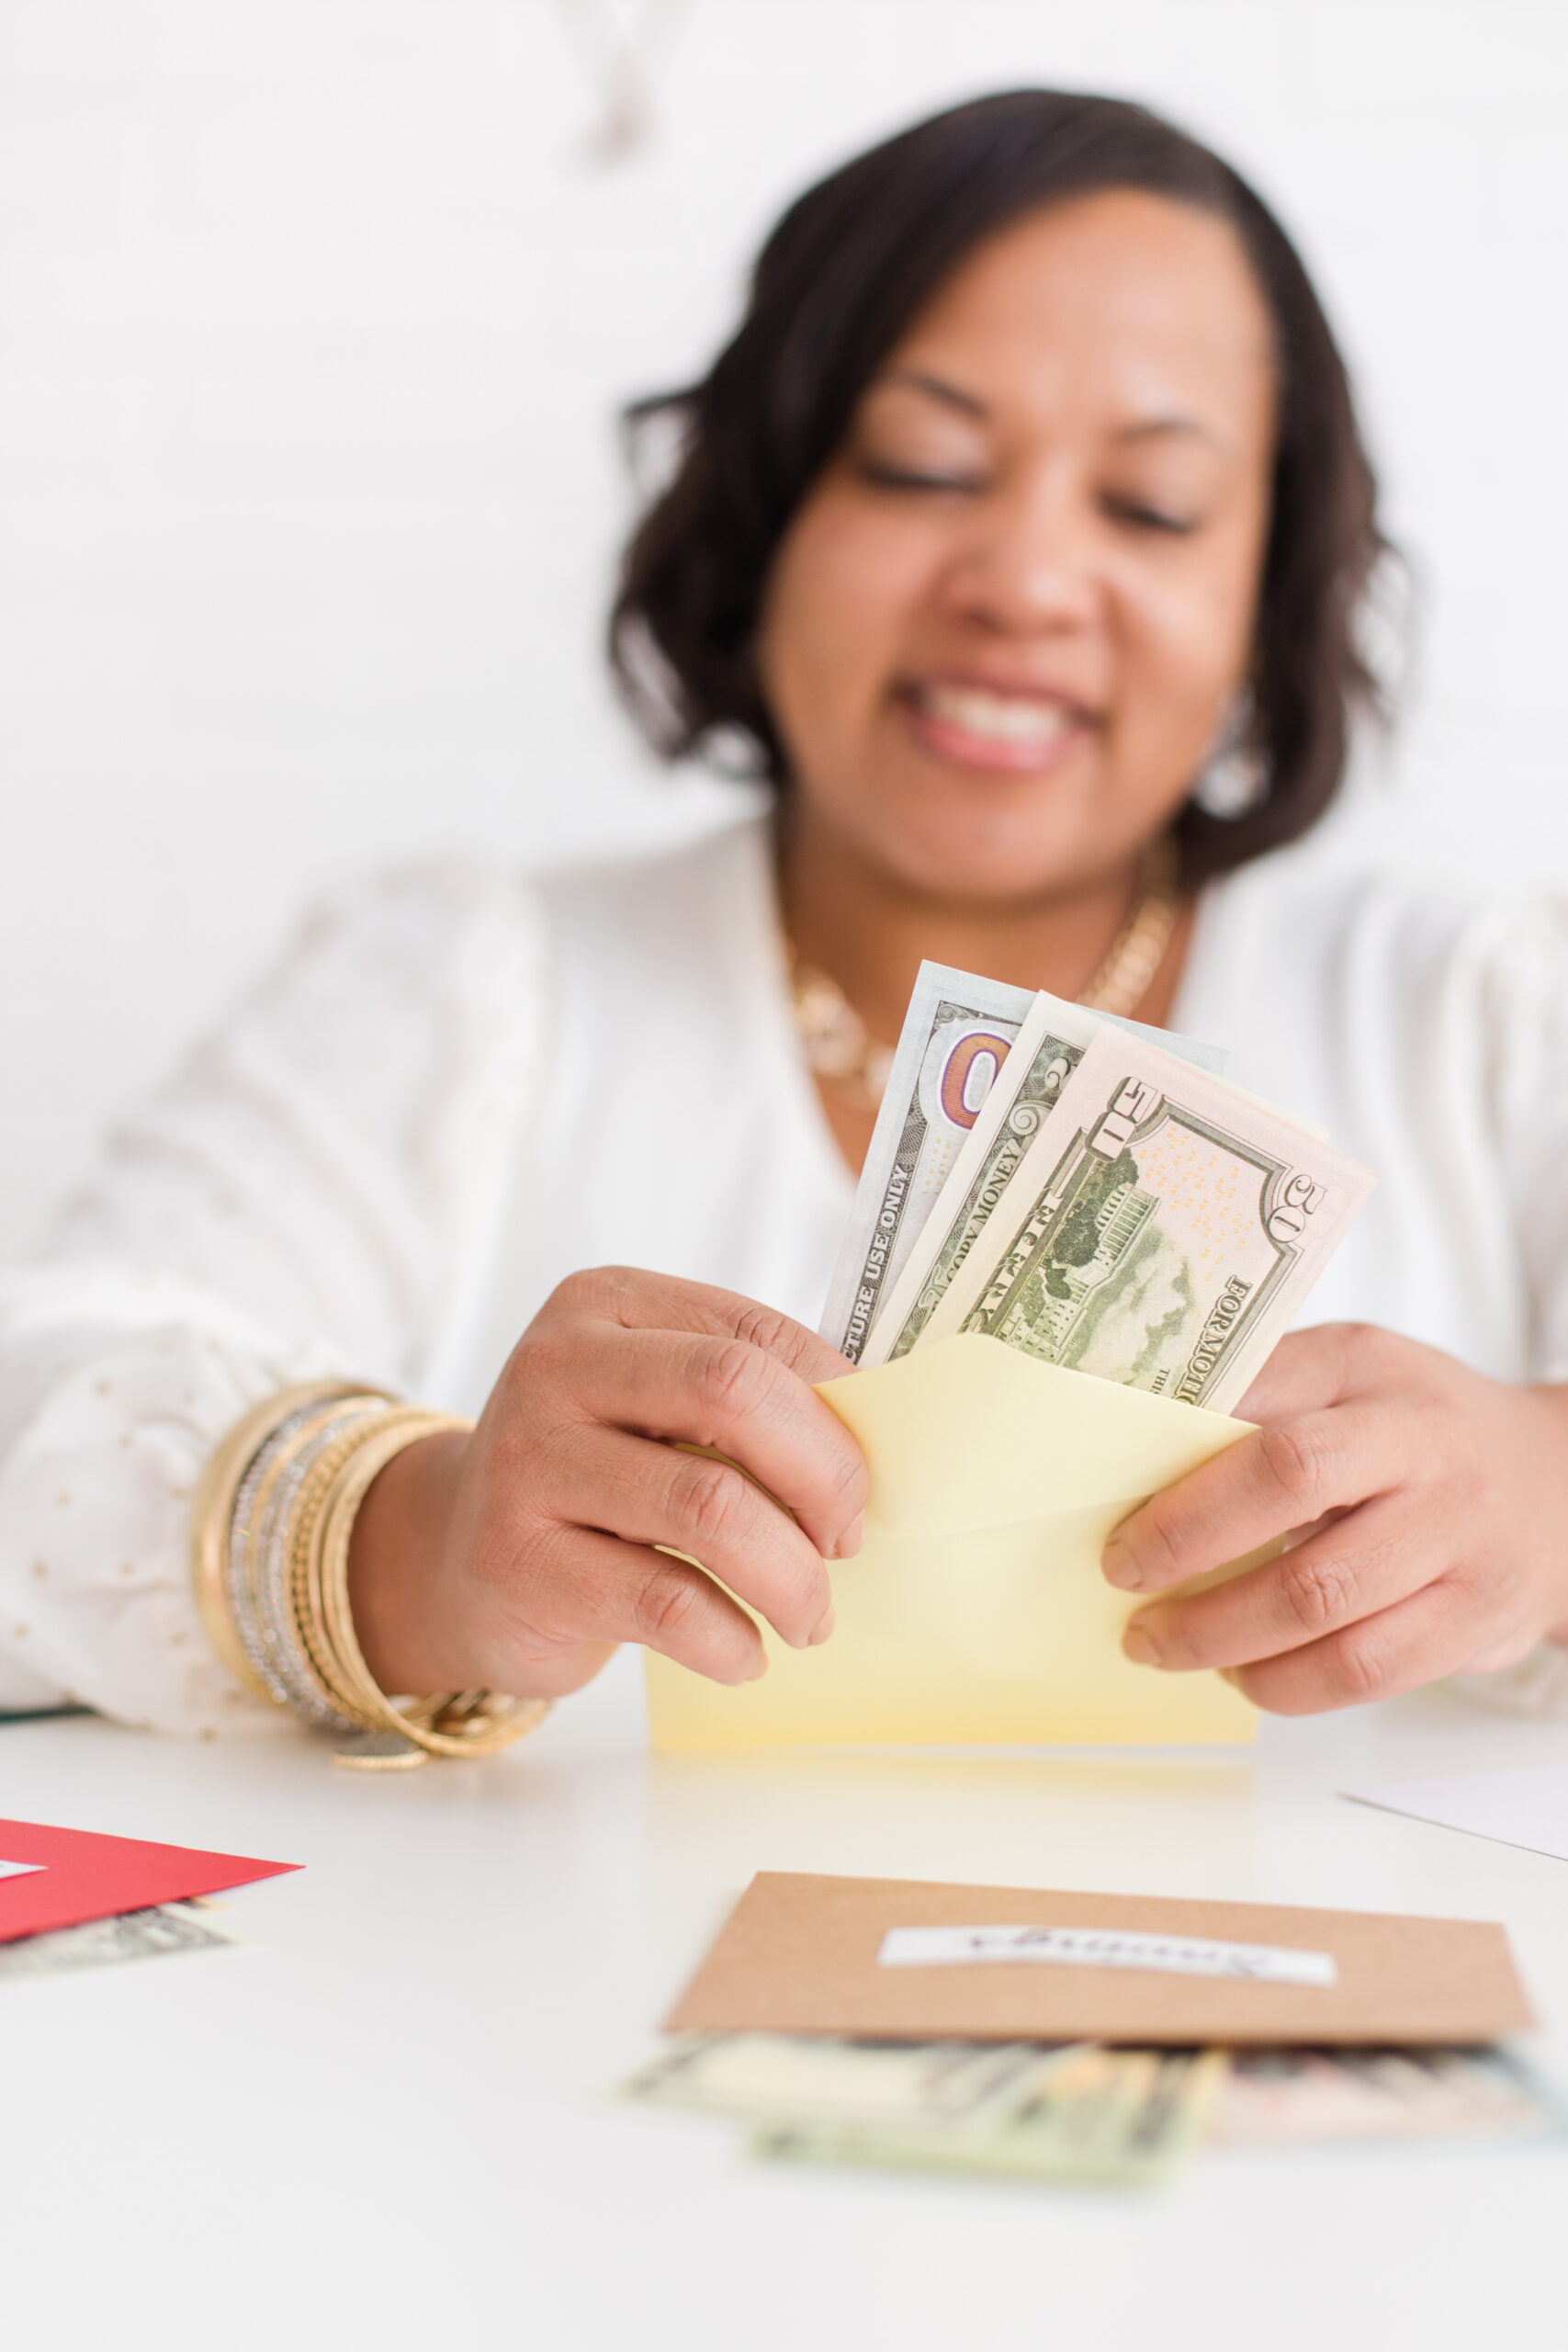 Black woman Having Fun While Saving Money